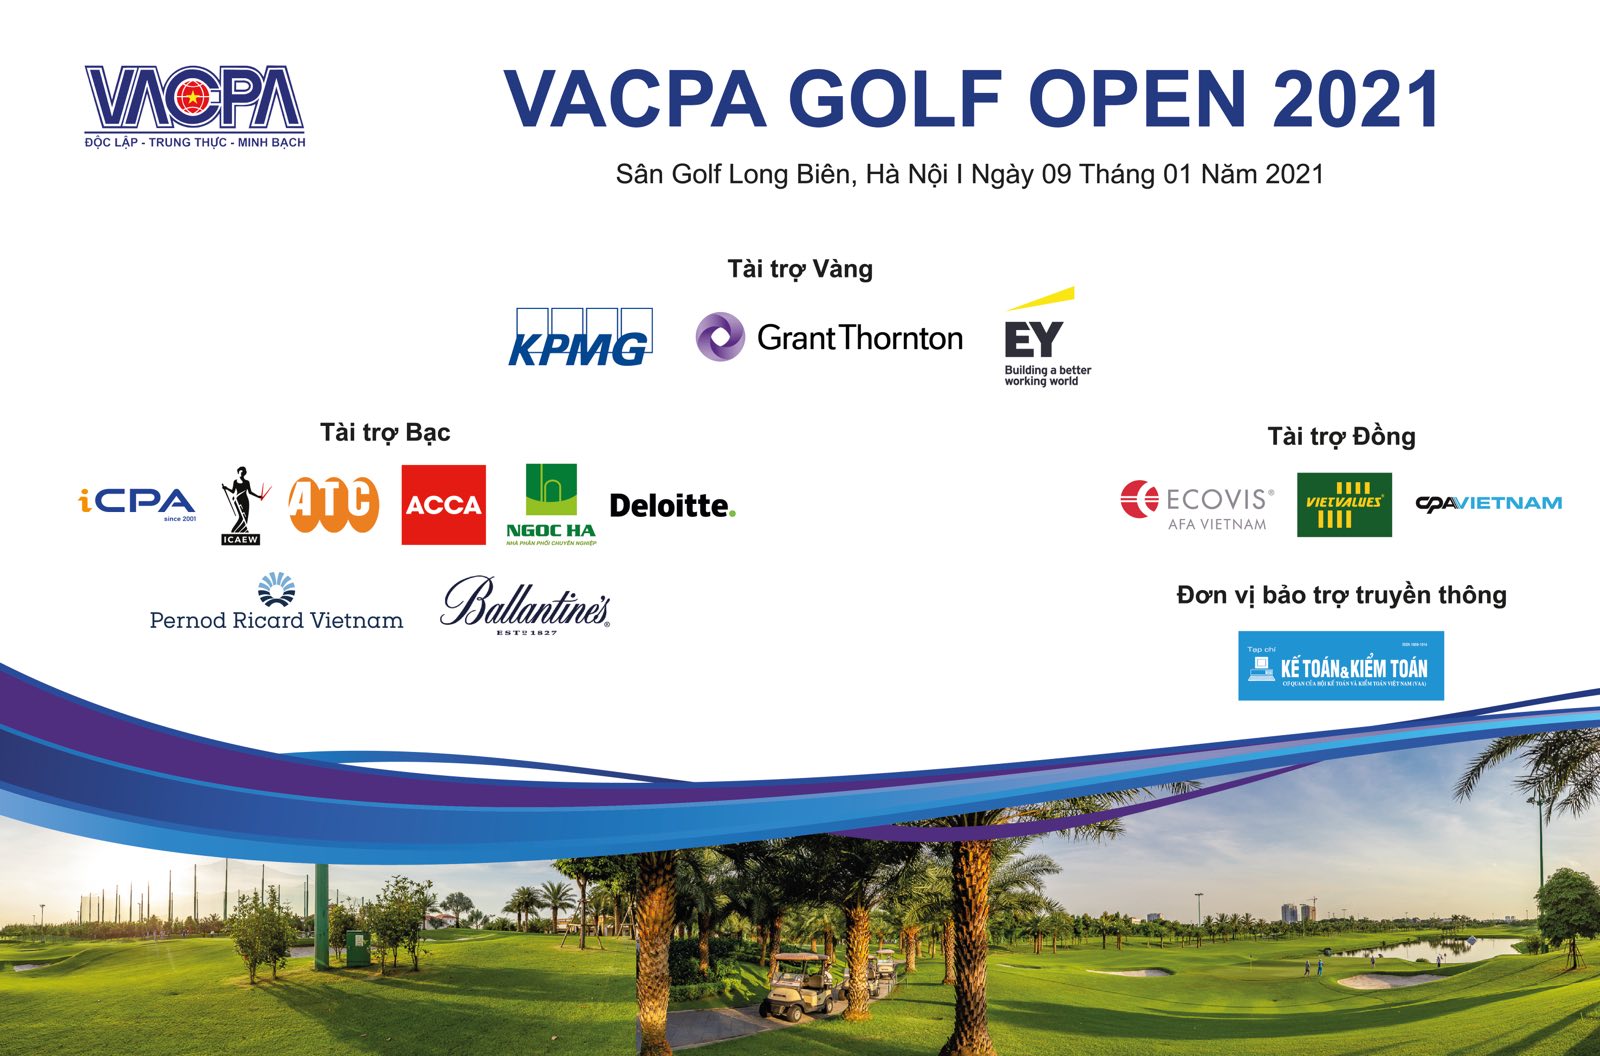 VACPA tổ chức giải “VACPA Golf Open 2021” chào xuân năm mới